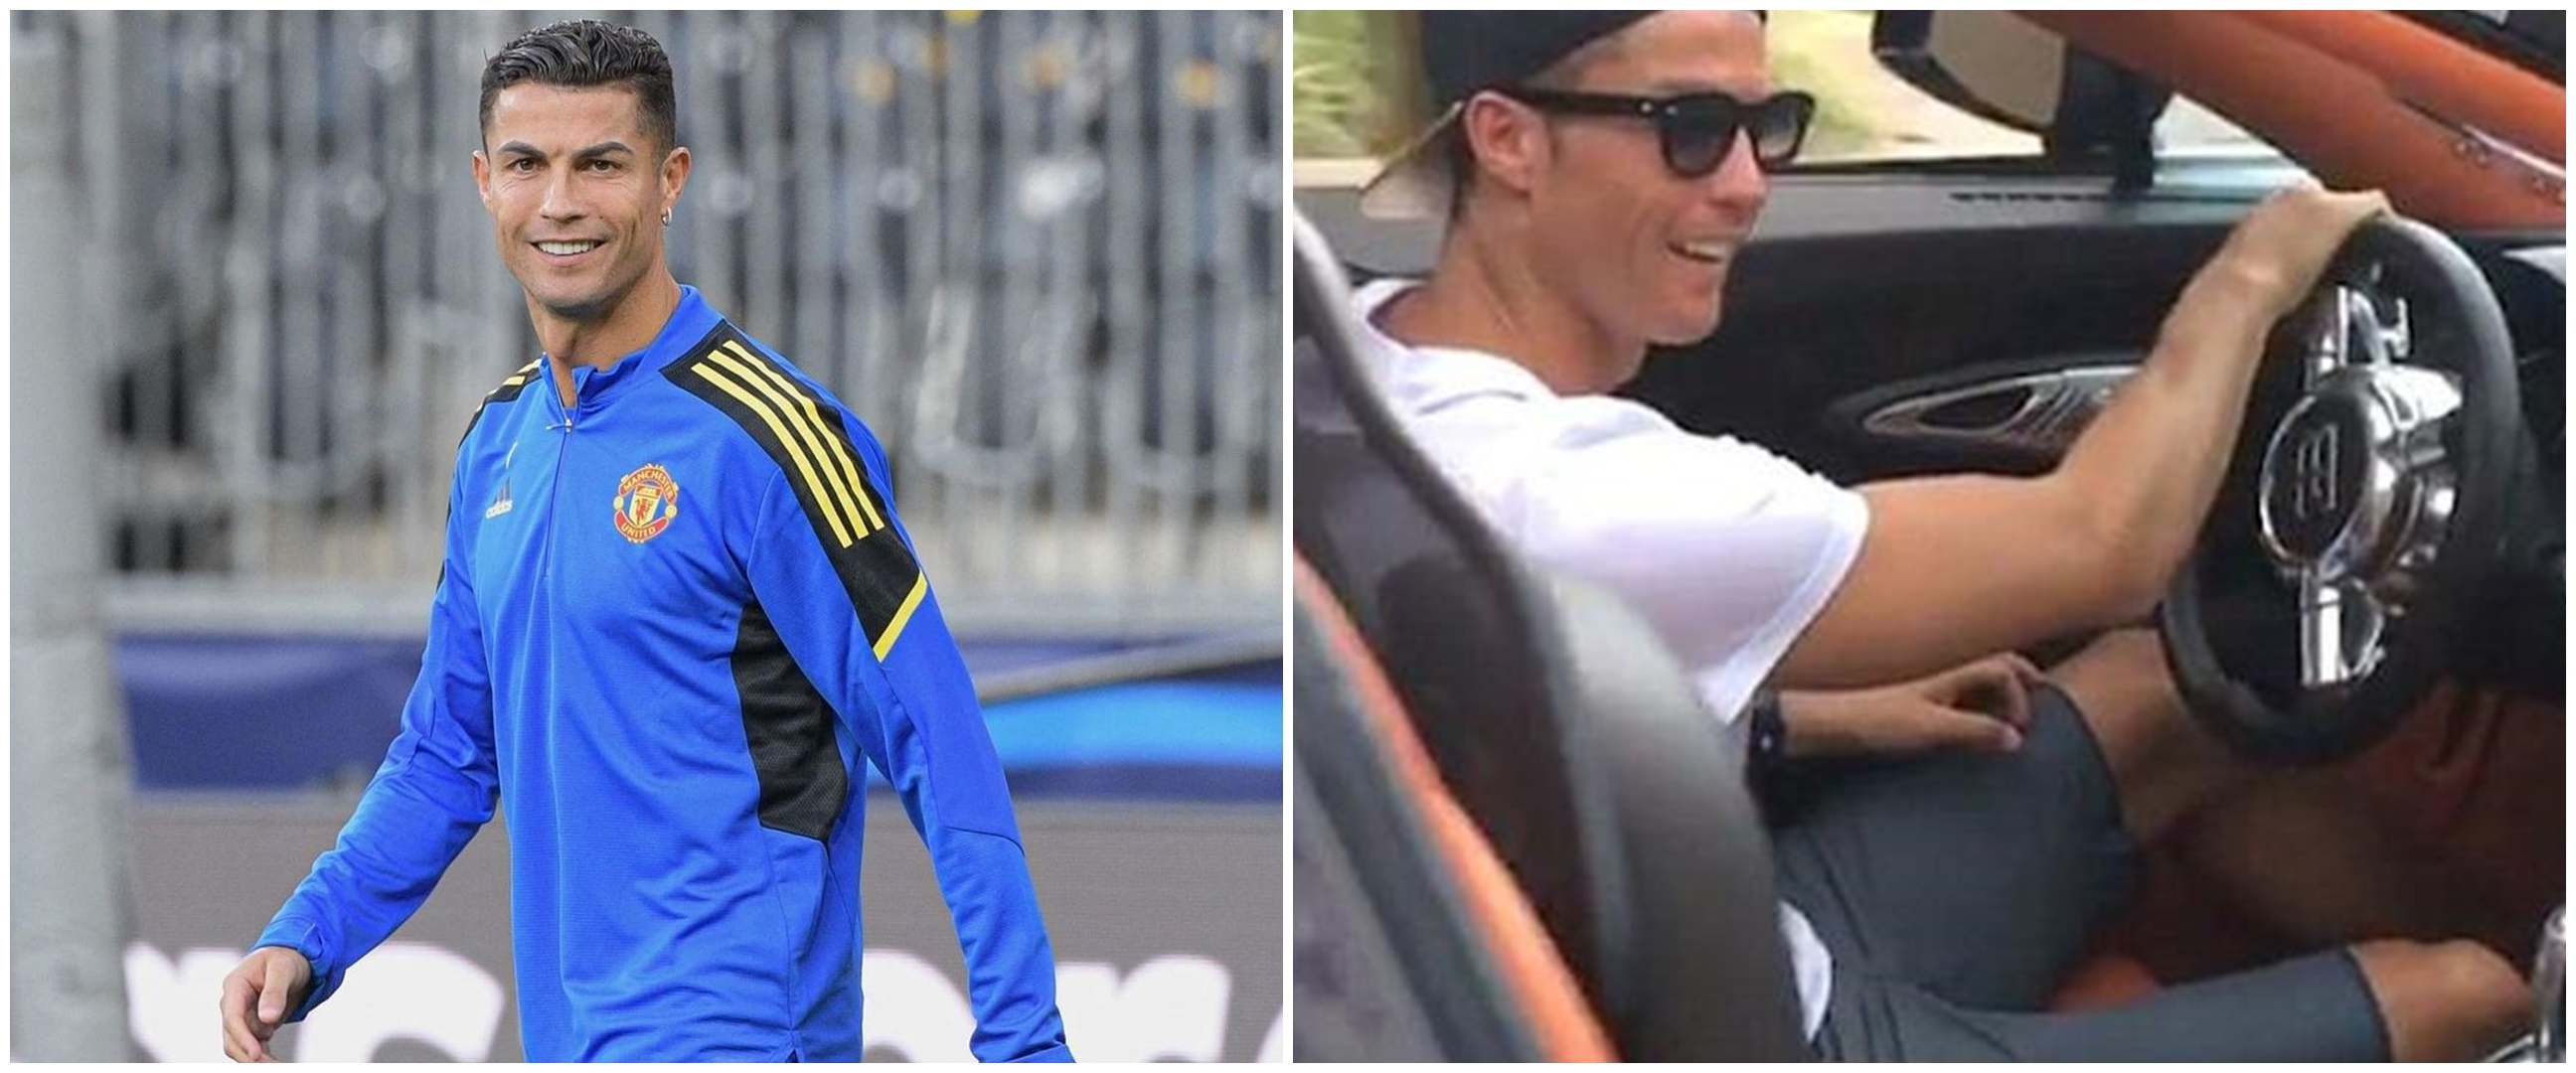 Antre 7 jam, mobil mewah Cristiano Ronaldo tak kebagian bensin